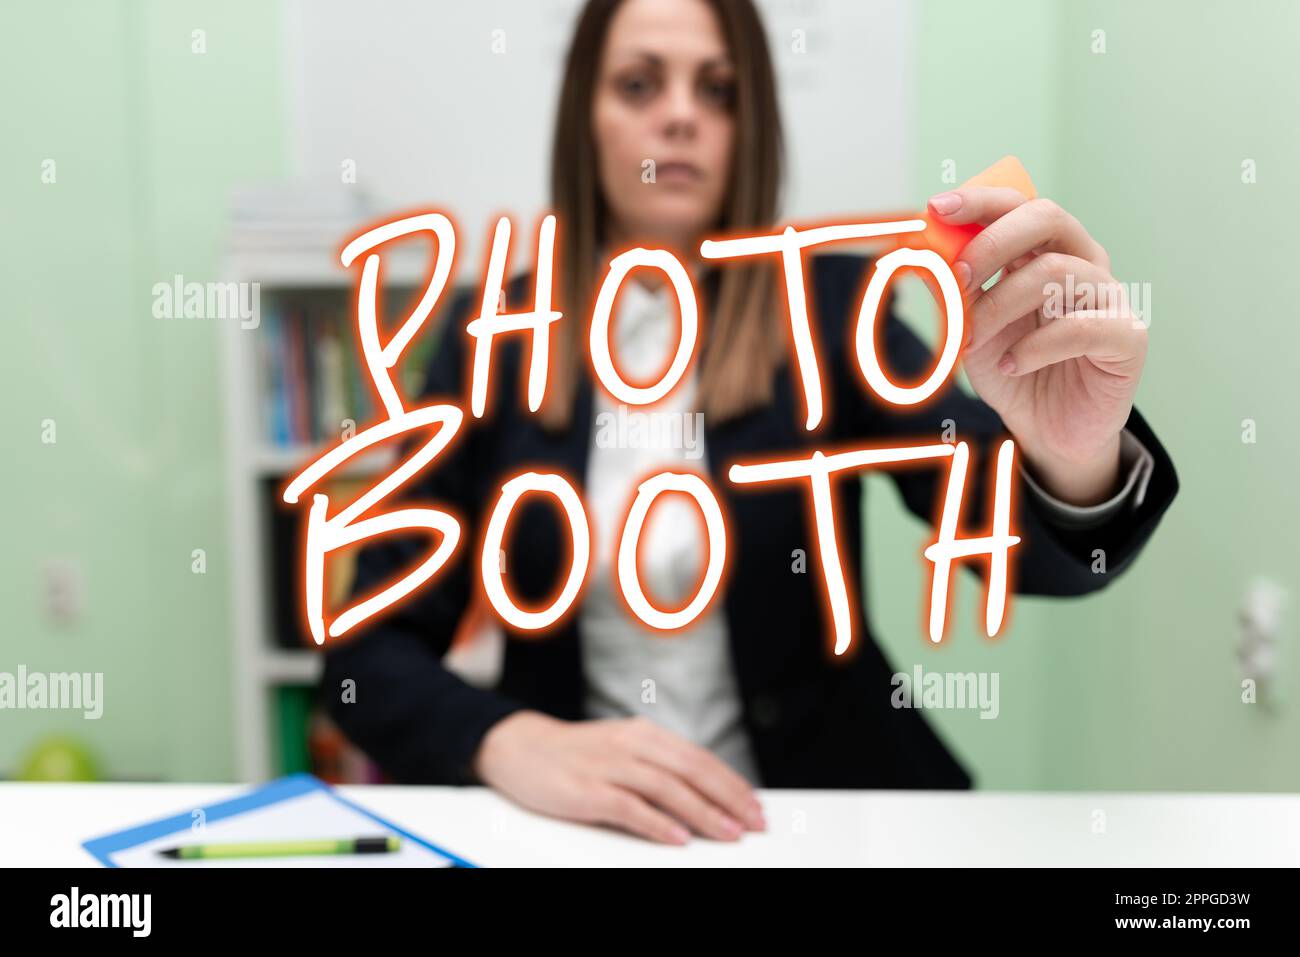 Konzeptionelle Ausstellung Photo Booth. Konzept bedeutet Form des Foto-Sharing und der Veröffentlichung im Format eines Blogs Stockfoto